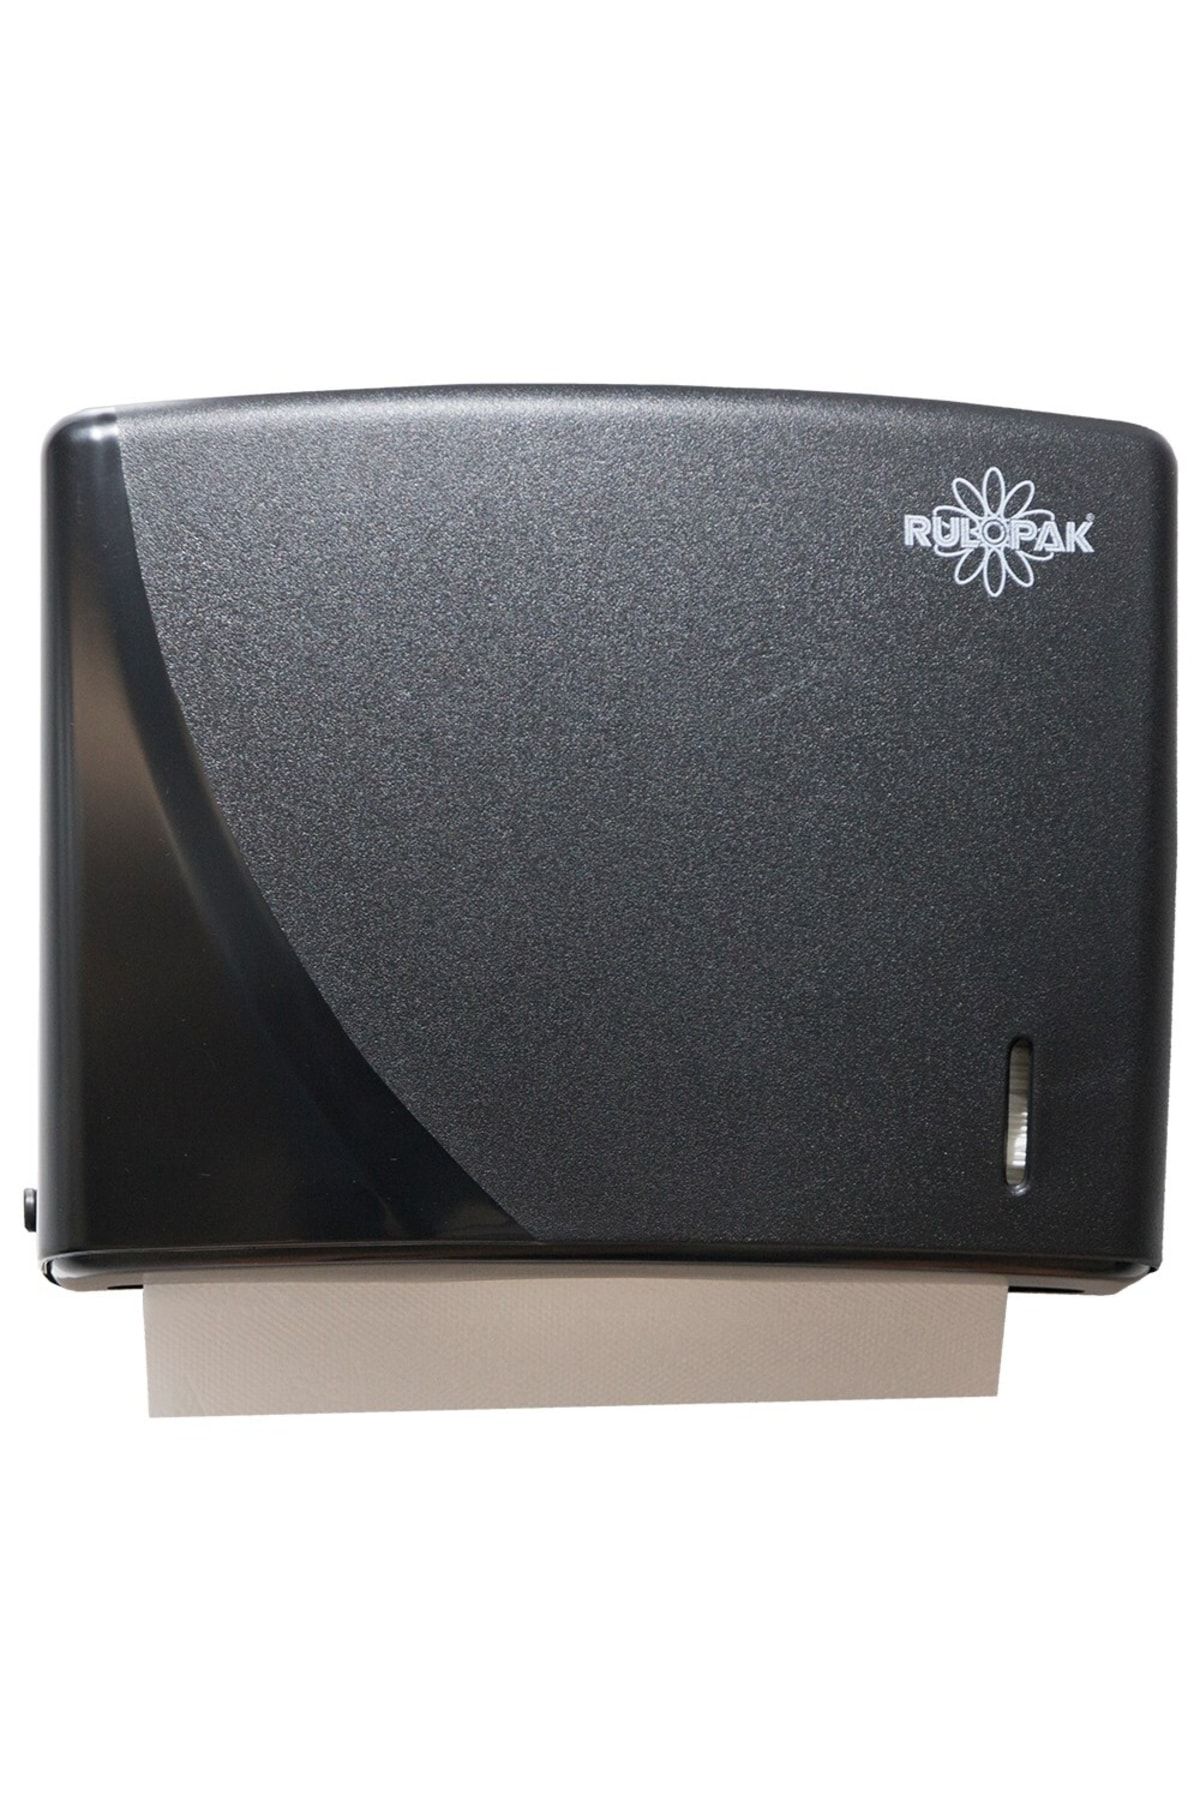 Rulopak R-1317 Modern Z Katlı 200 'lü Havlu Dispenseri Siyah*303356